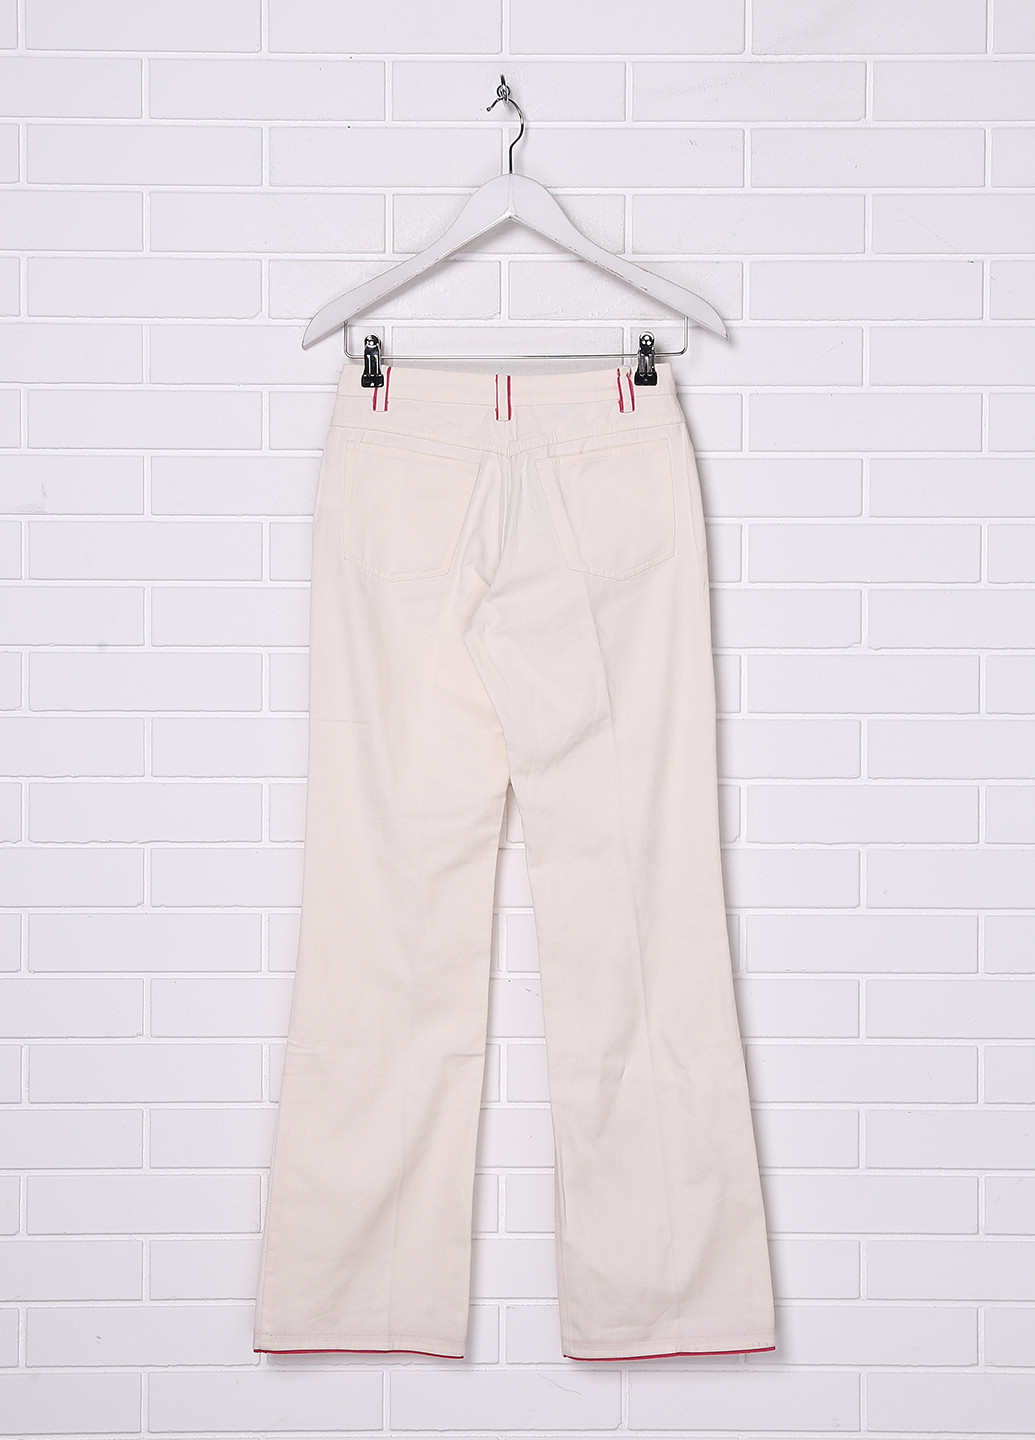 Светло-бежевые джинсовые демисезонные прямые брюки Pinco Pallino